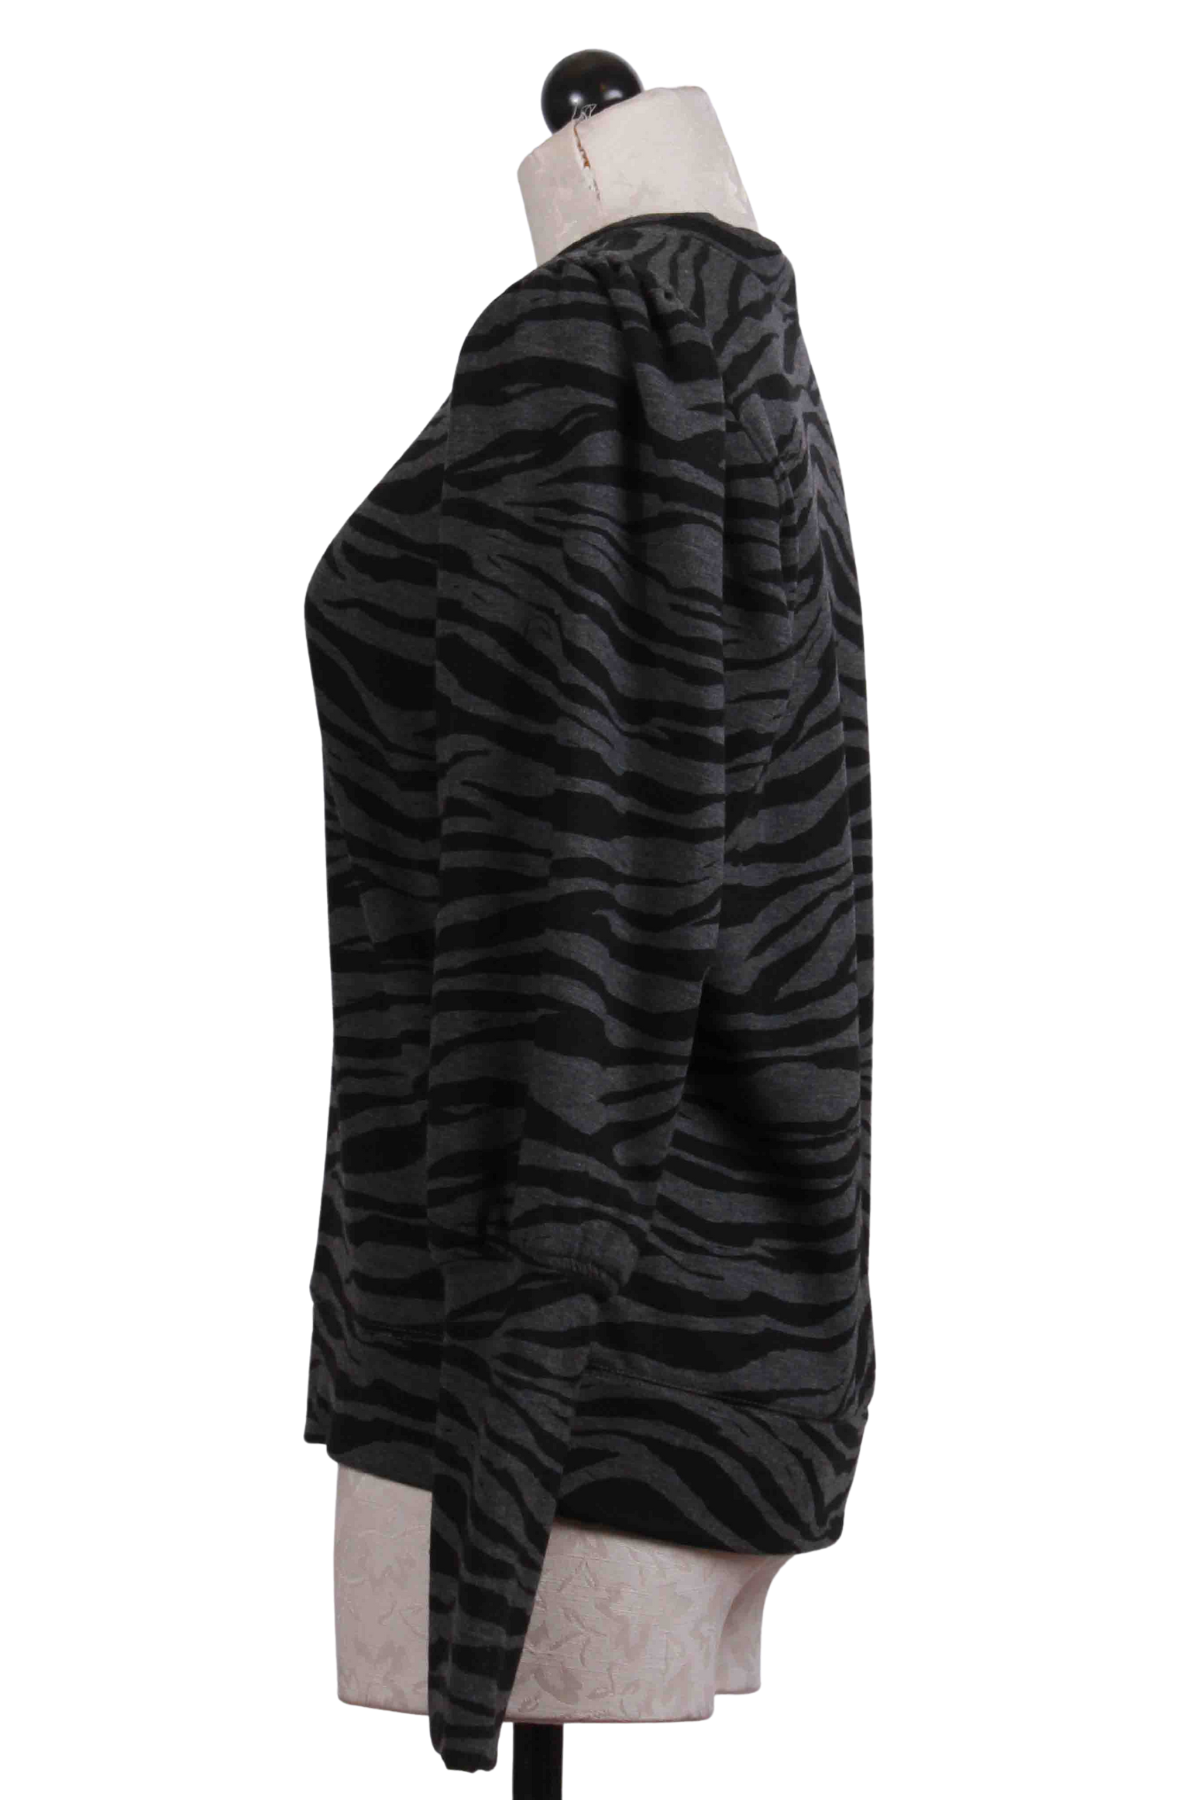 side view of Zebra Print Fleece Bishop Sleeve Top by Fifteen Twenty